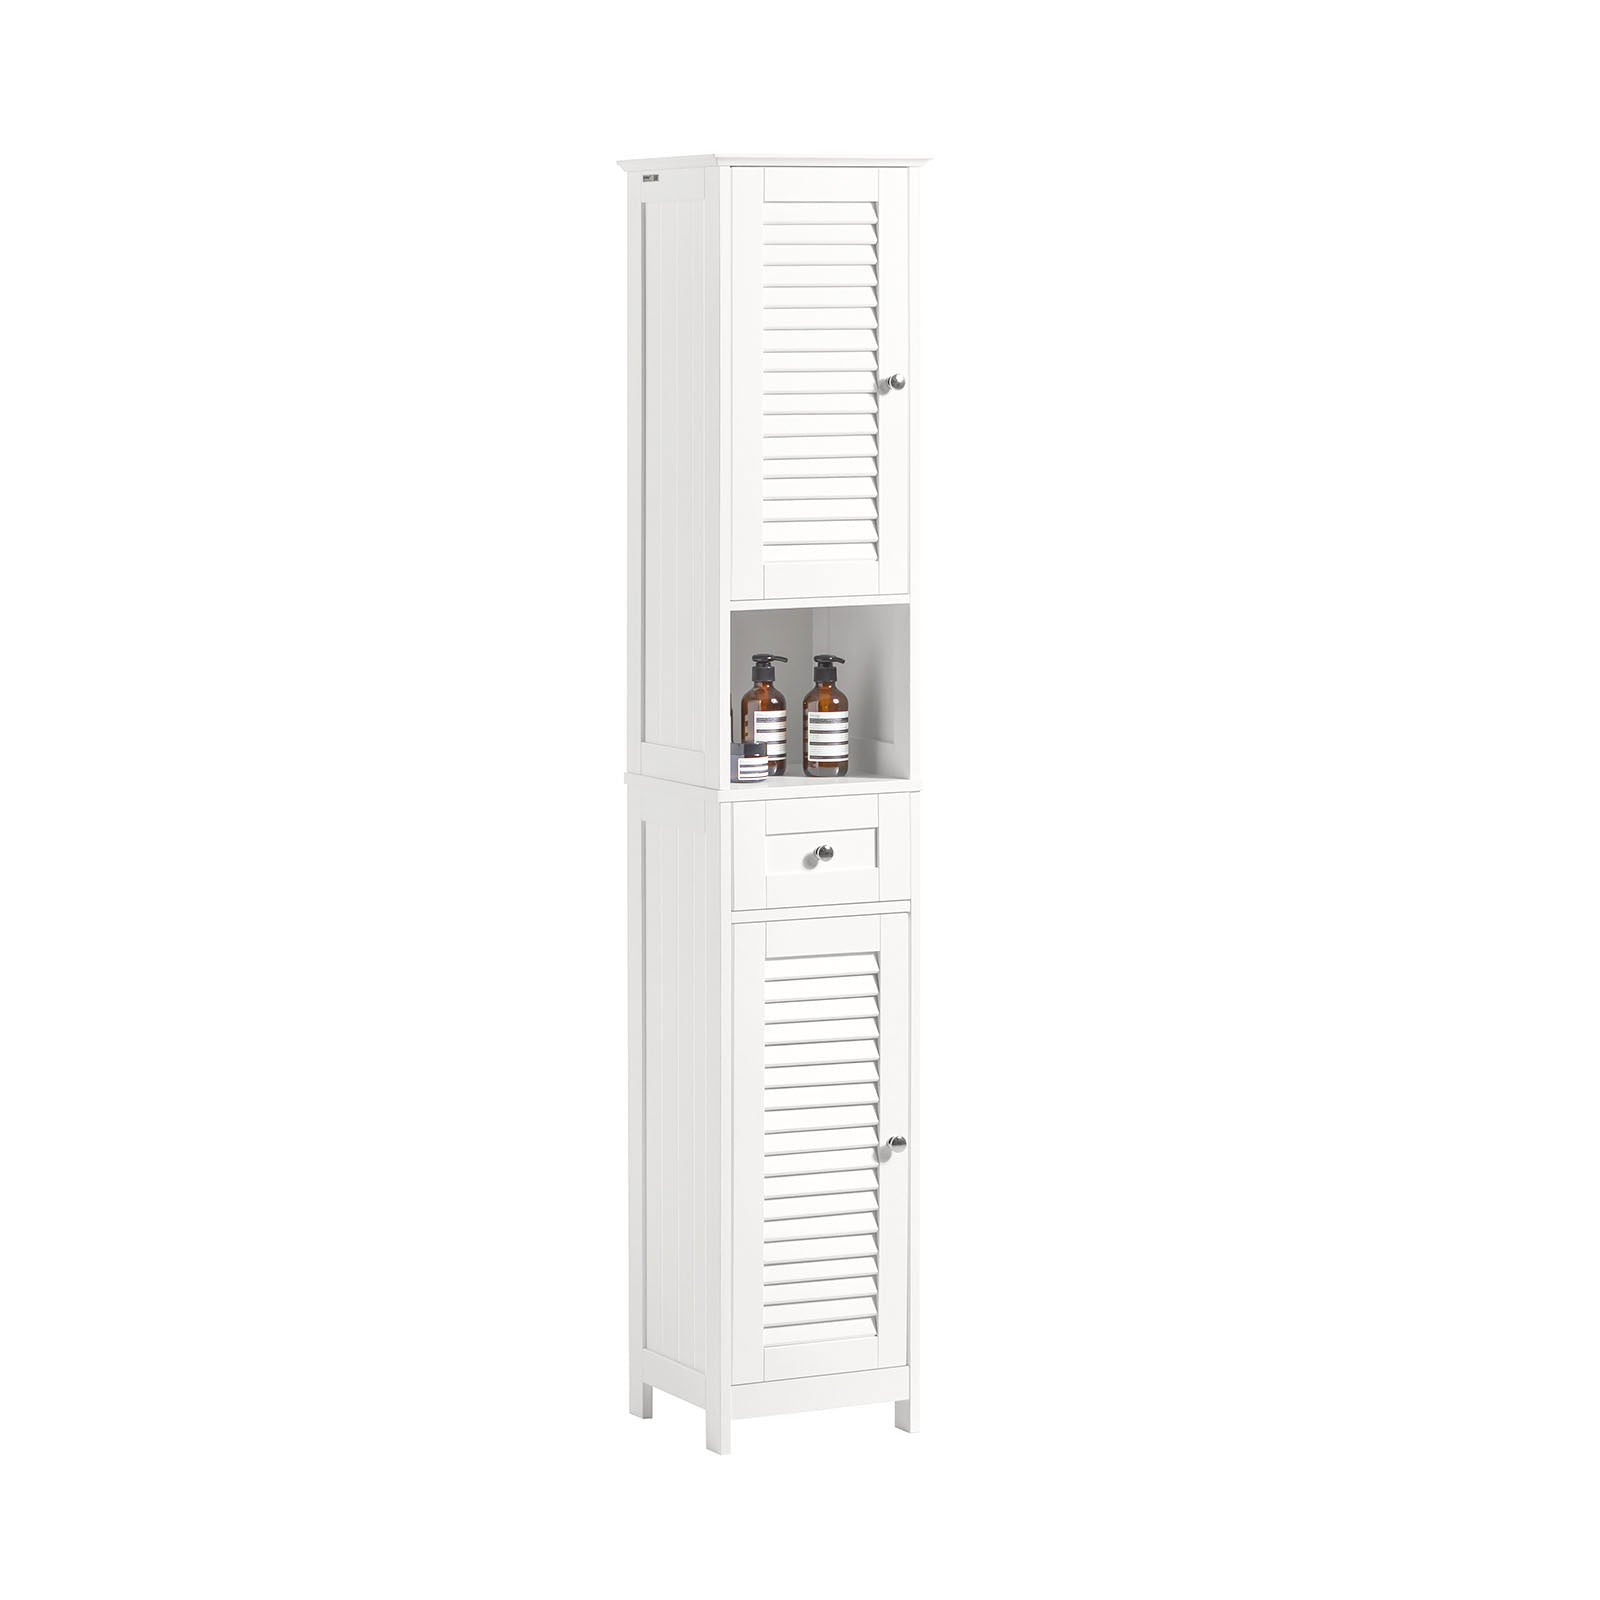 SoBuy White Free Standing Tallboy Bathroom Cabinet Storage Cupboard,FRG236-W